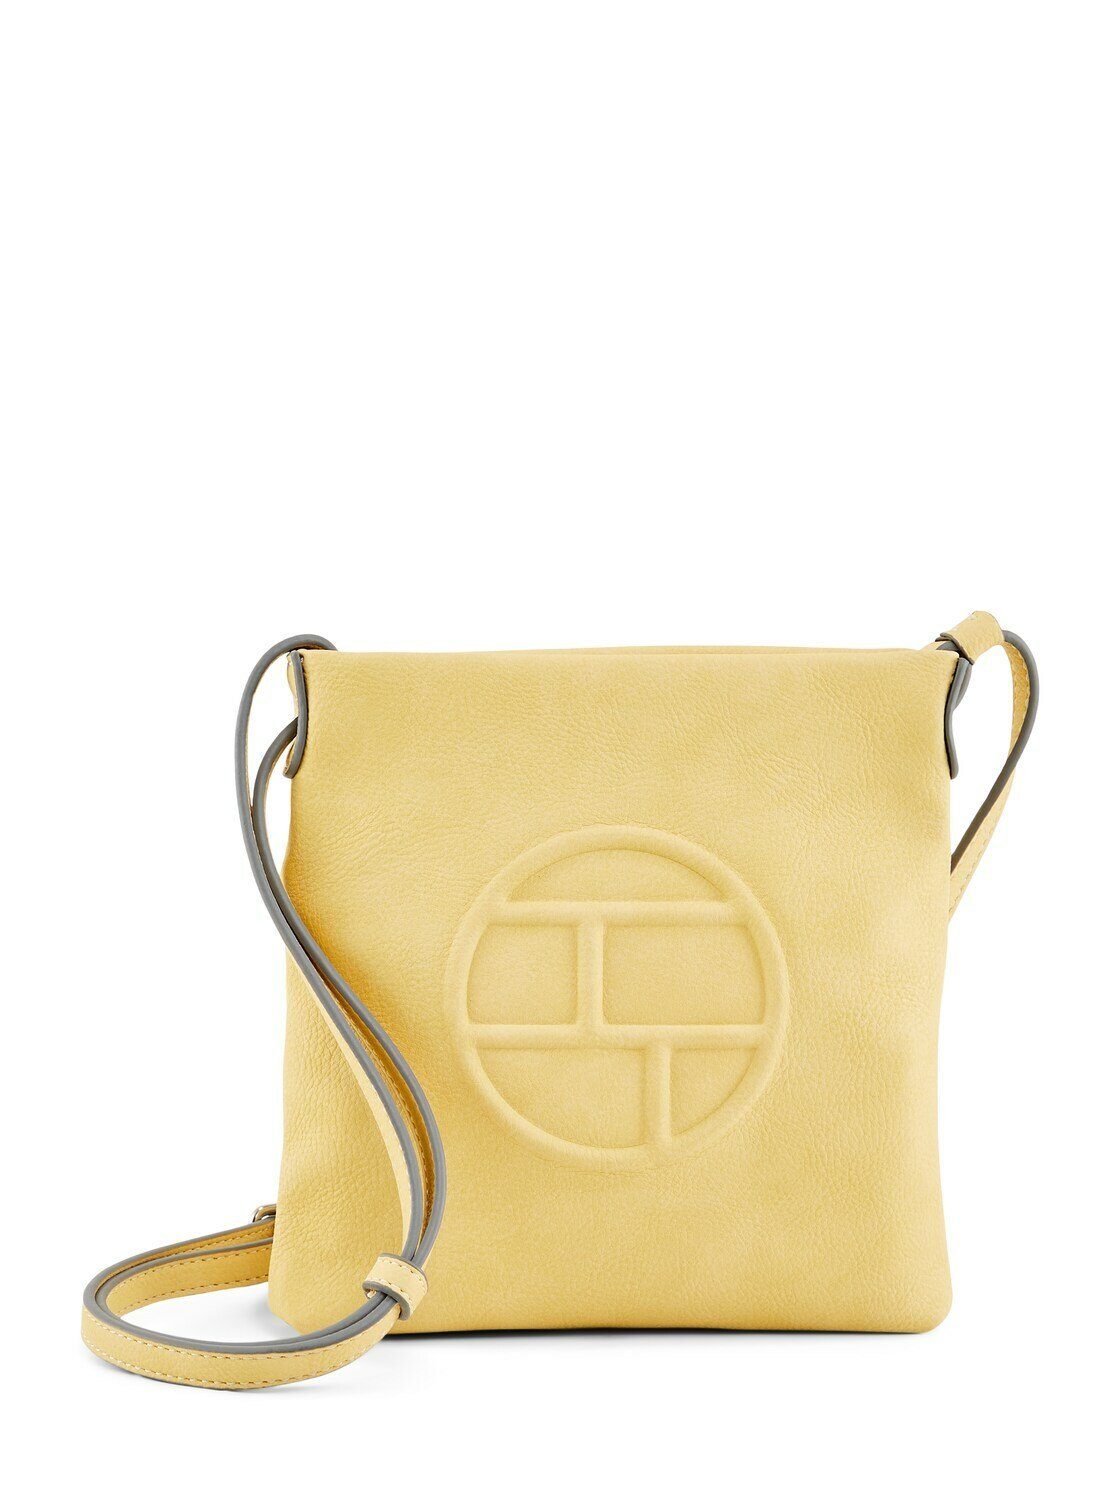 TOM TAILOR Umhängetasche Rosabel Cross bag XS Kleine Umhängetasche mit Reißverschlussöffnung gelb / yellow | Umhängetaschen